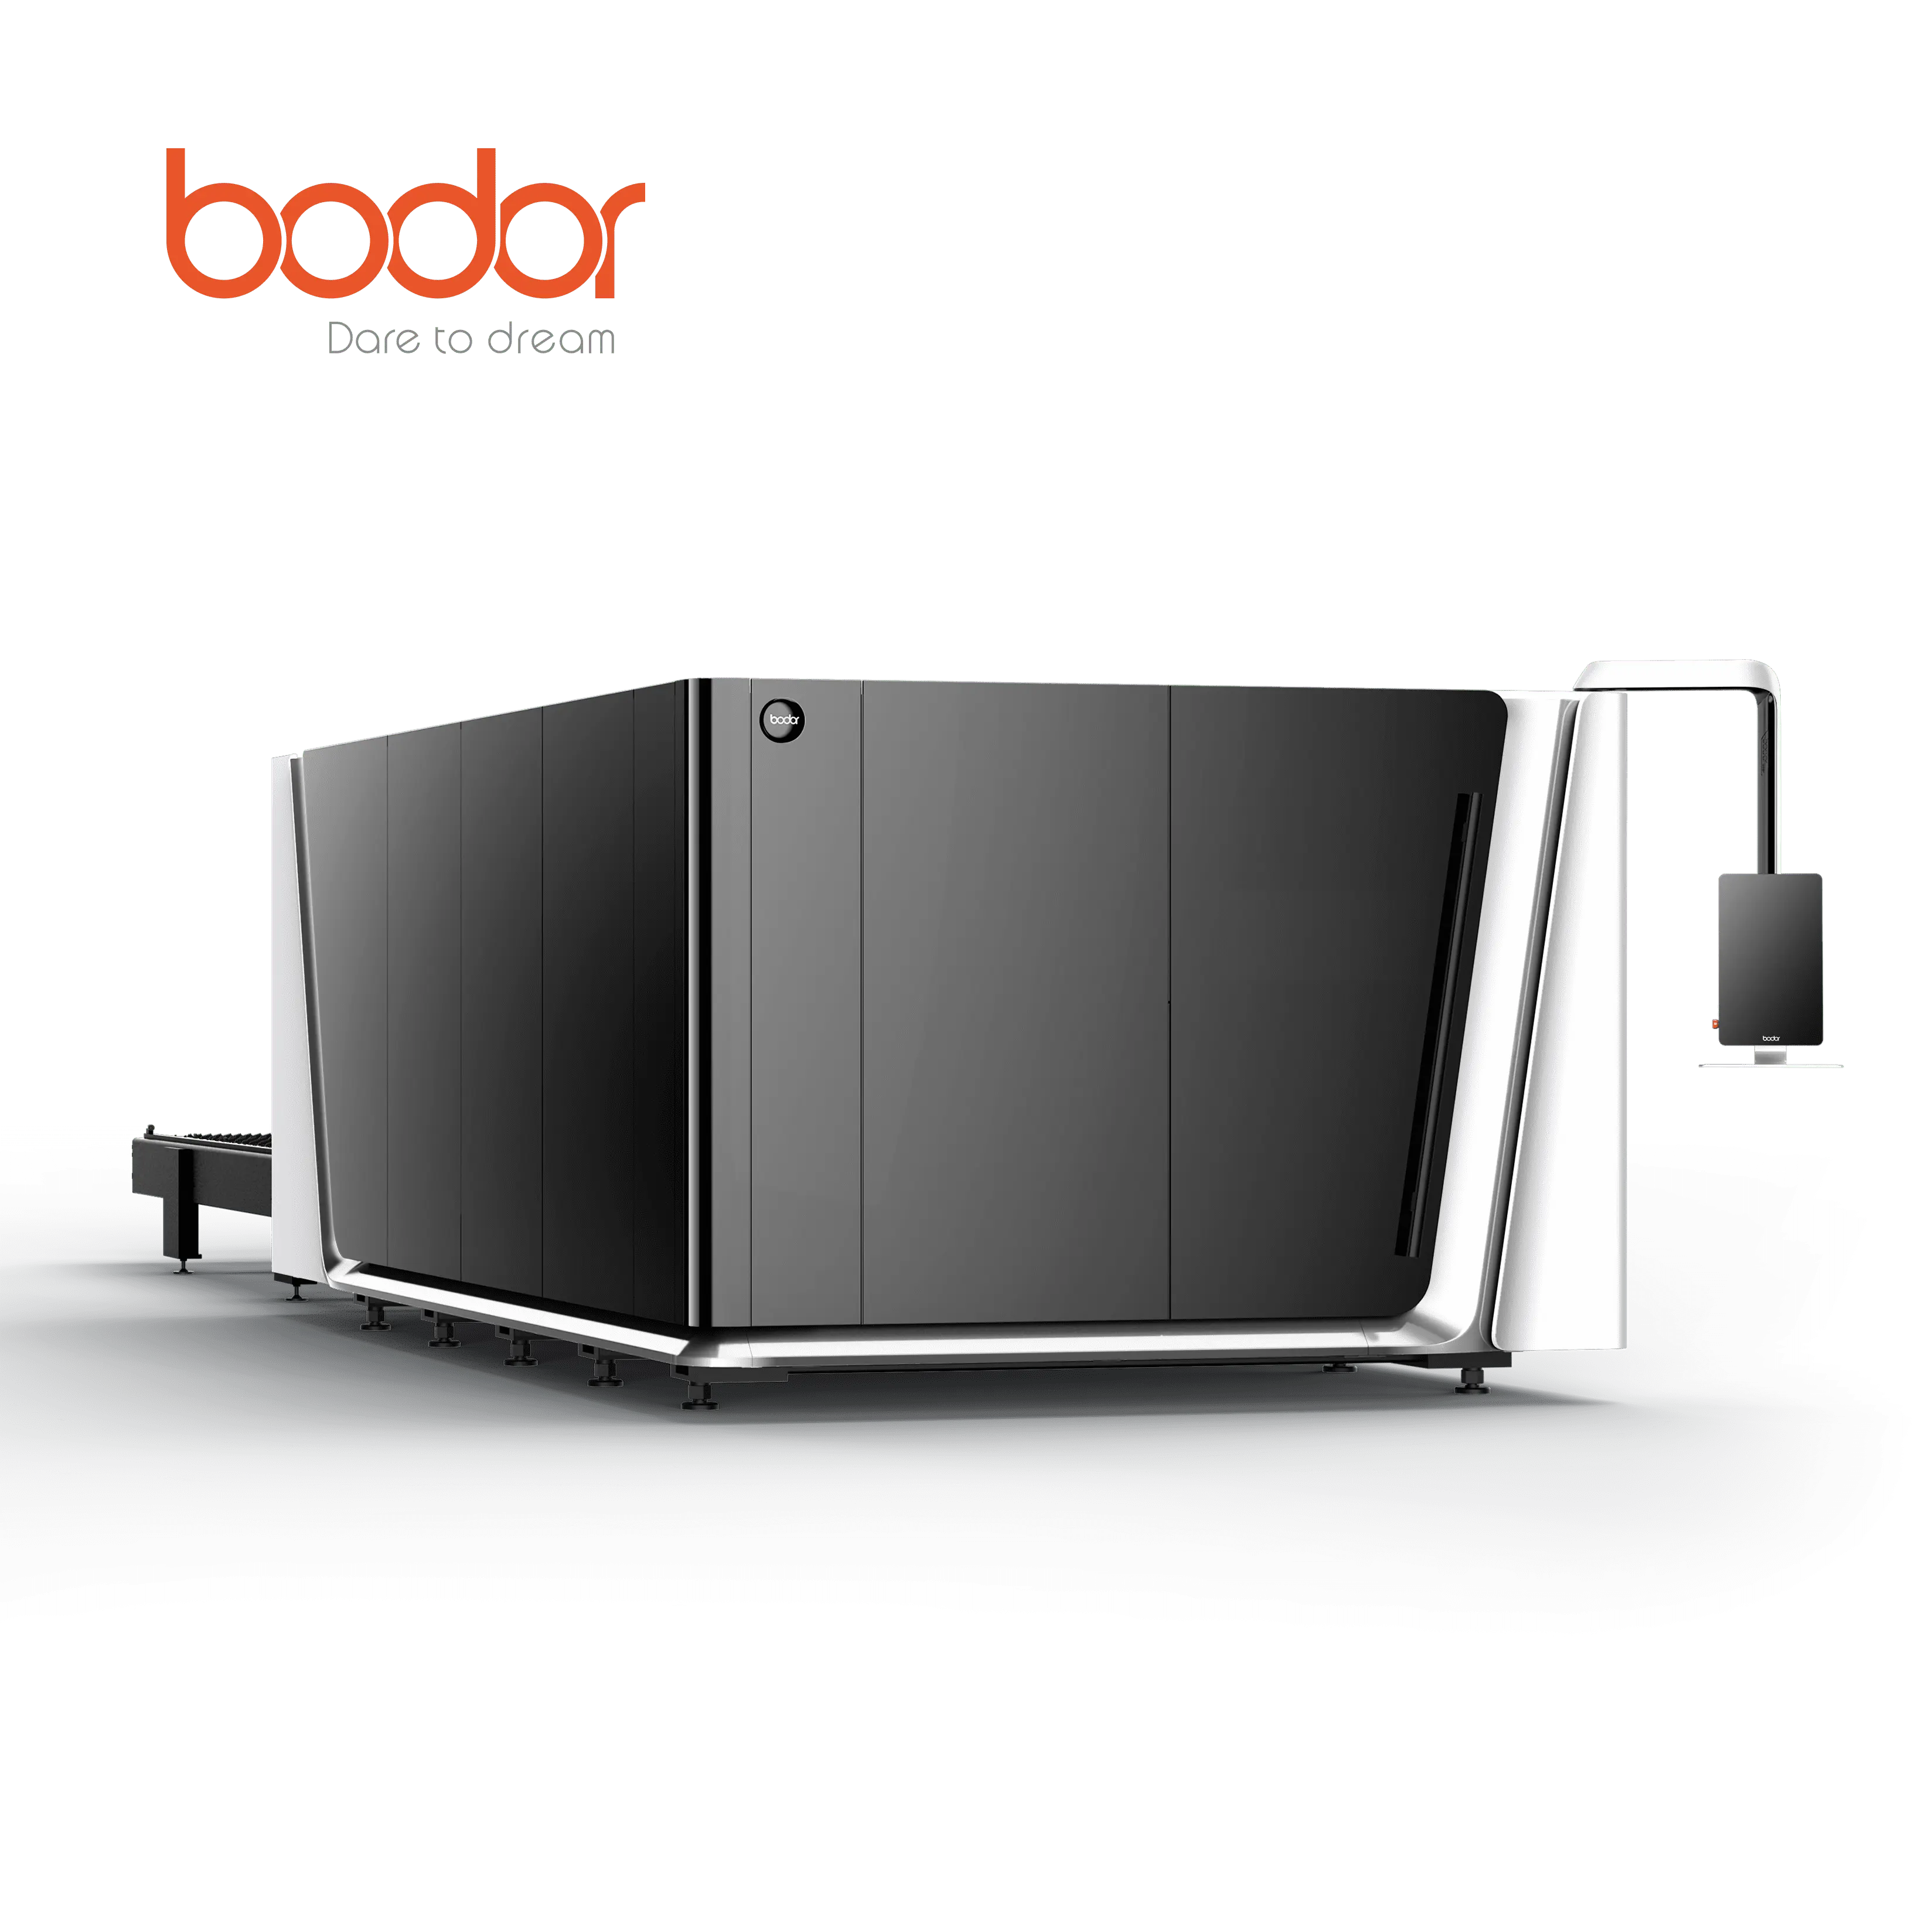 Utilisation économique de série C de Bodor sur la découpeuse de laser de fibre de décoration de la publicité délai de livraison de 20 jours